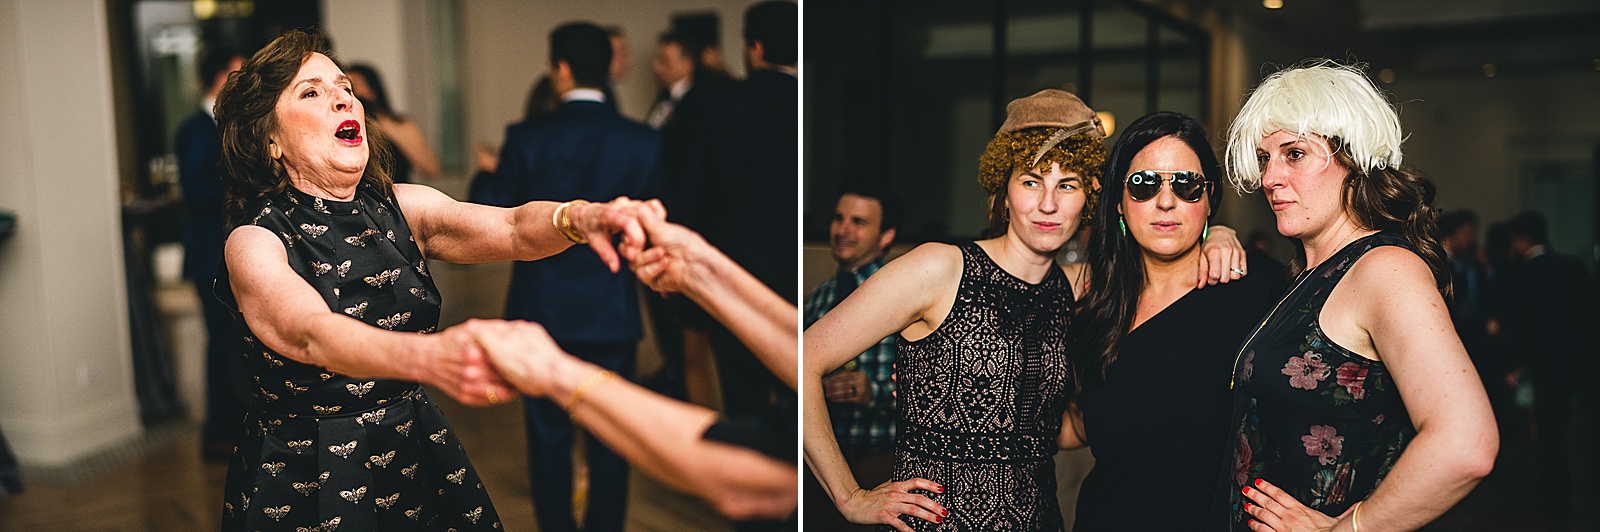 50 party time at wedding - Chicago Illuminating Company Wedding // Samantha + Jeremy